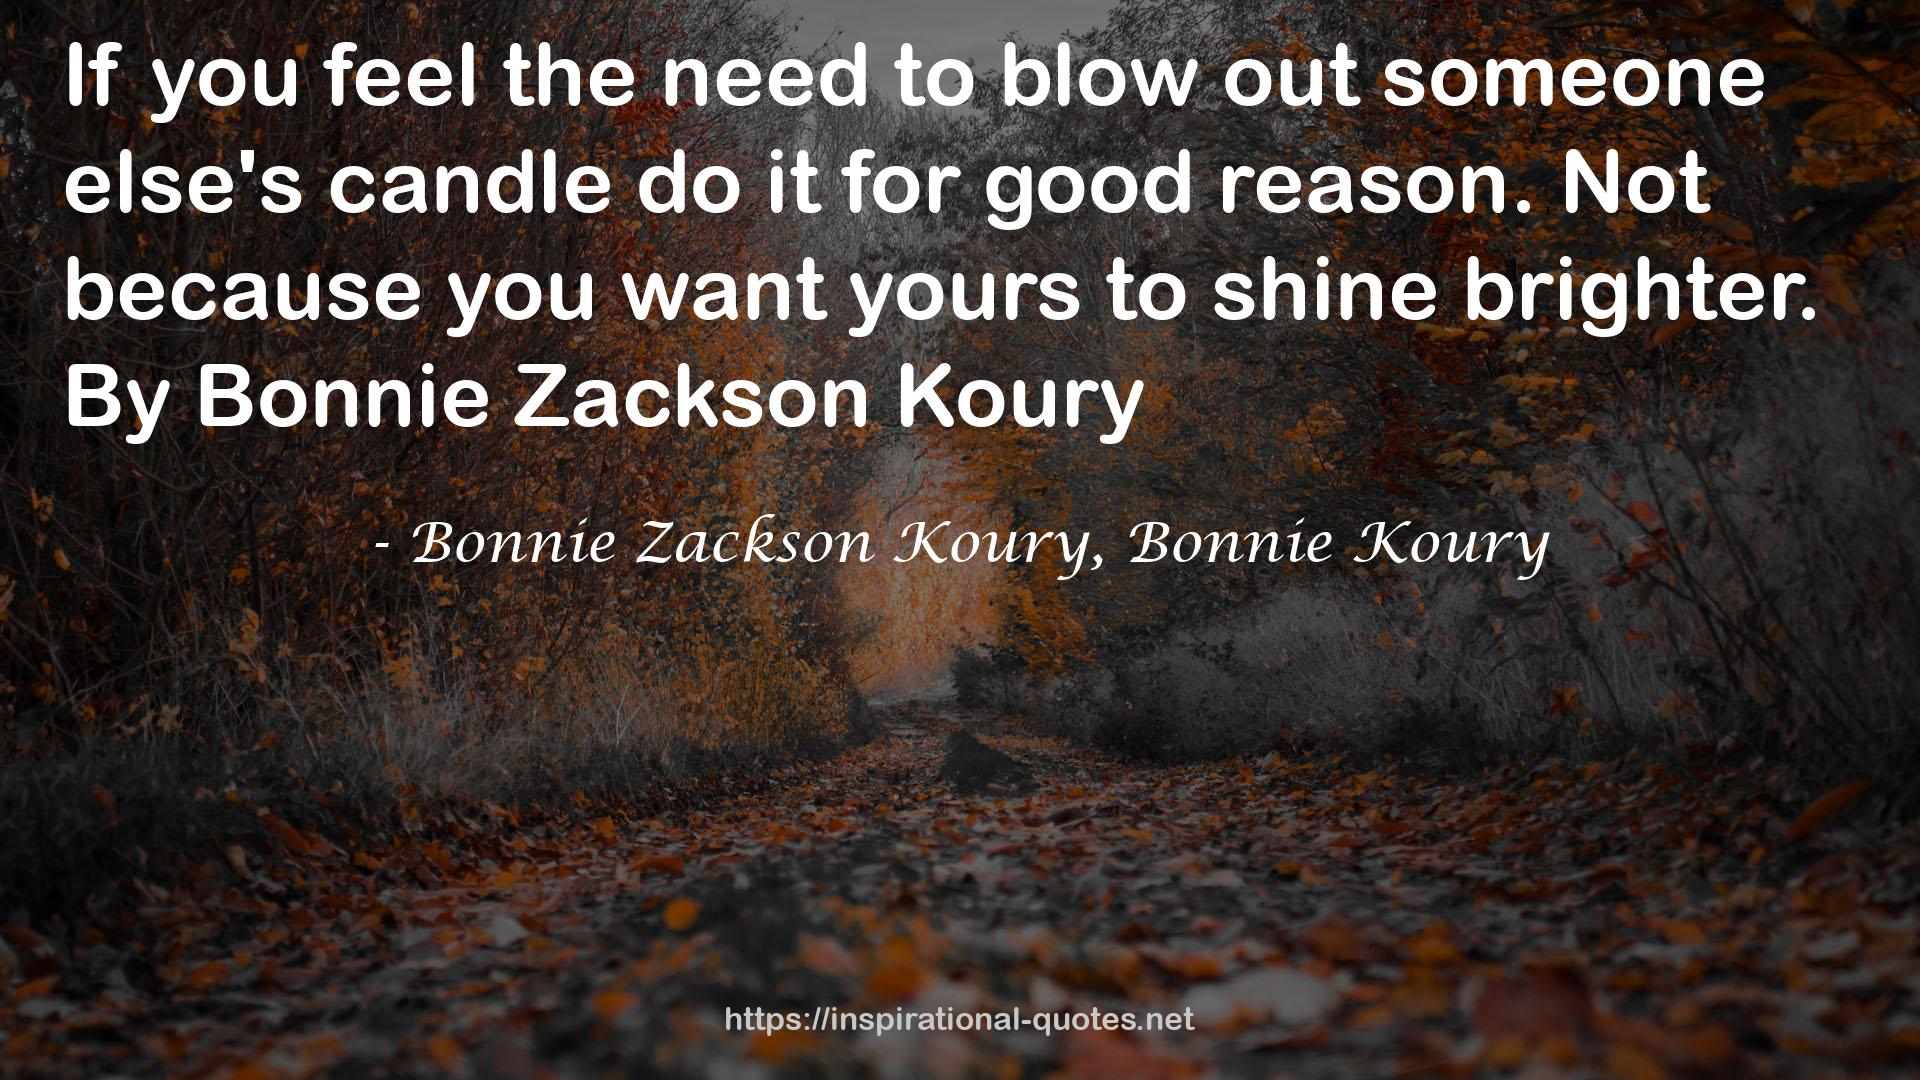 Bonnie Zackson Koury, Bonnie Koury QUOTES